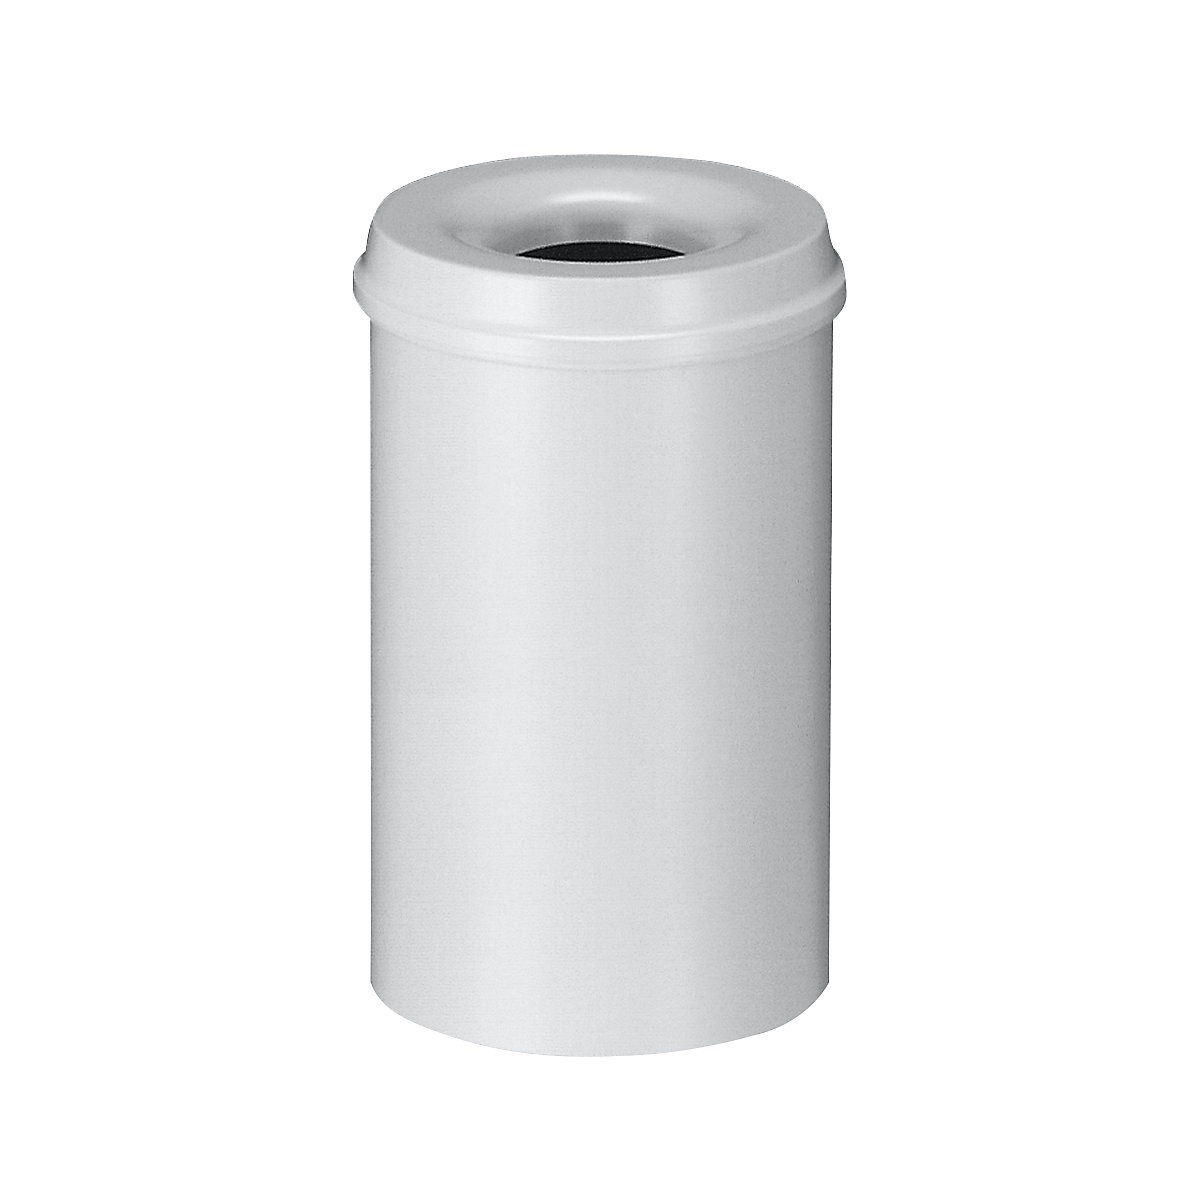 Corbeille à papier auto-extinguible, capacité 20 l, h x Ø 426 x 260 mm, corps gris / étouffoir gris